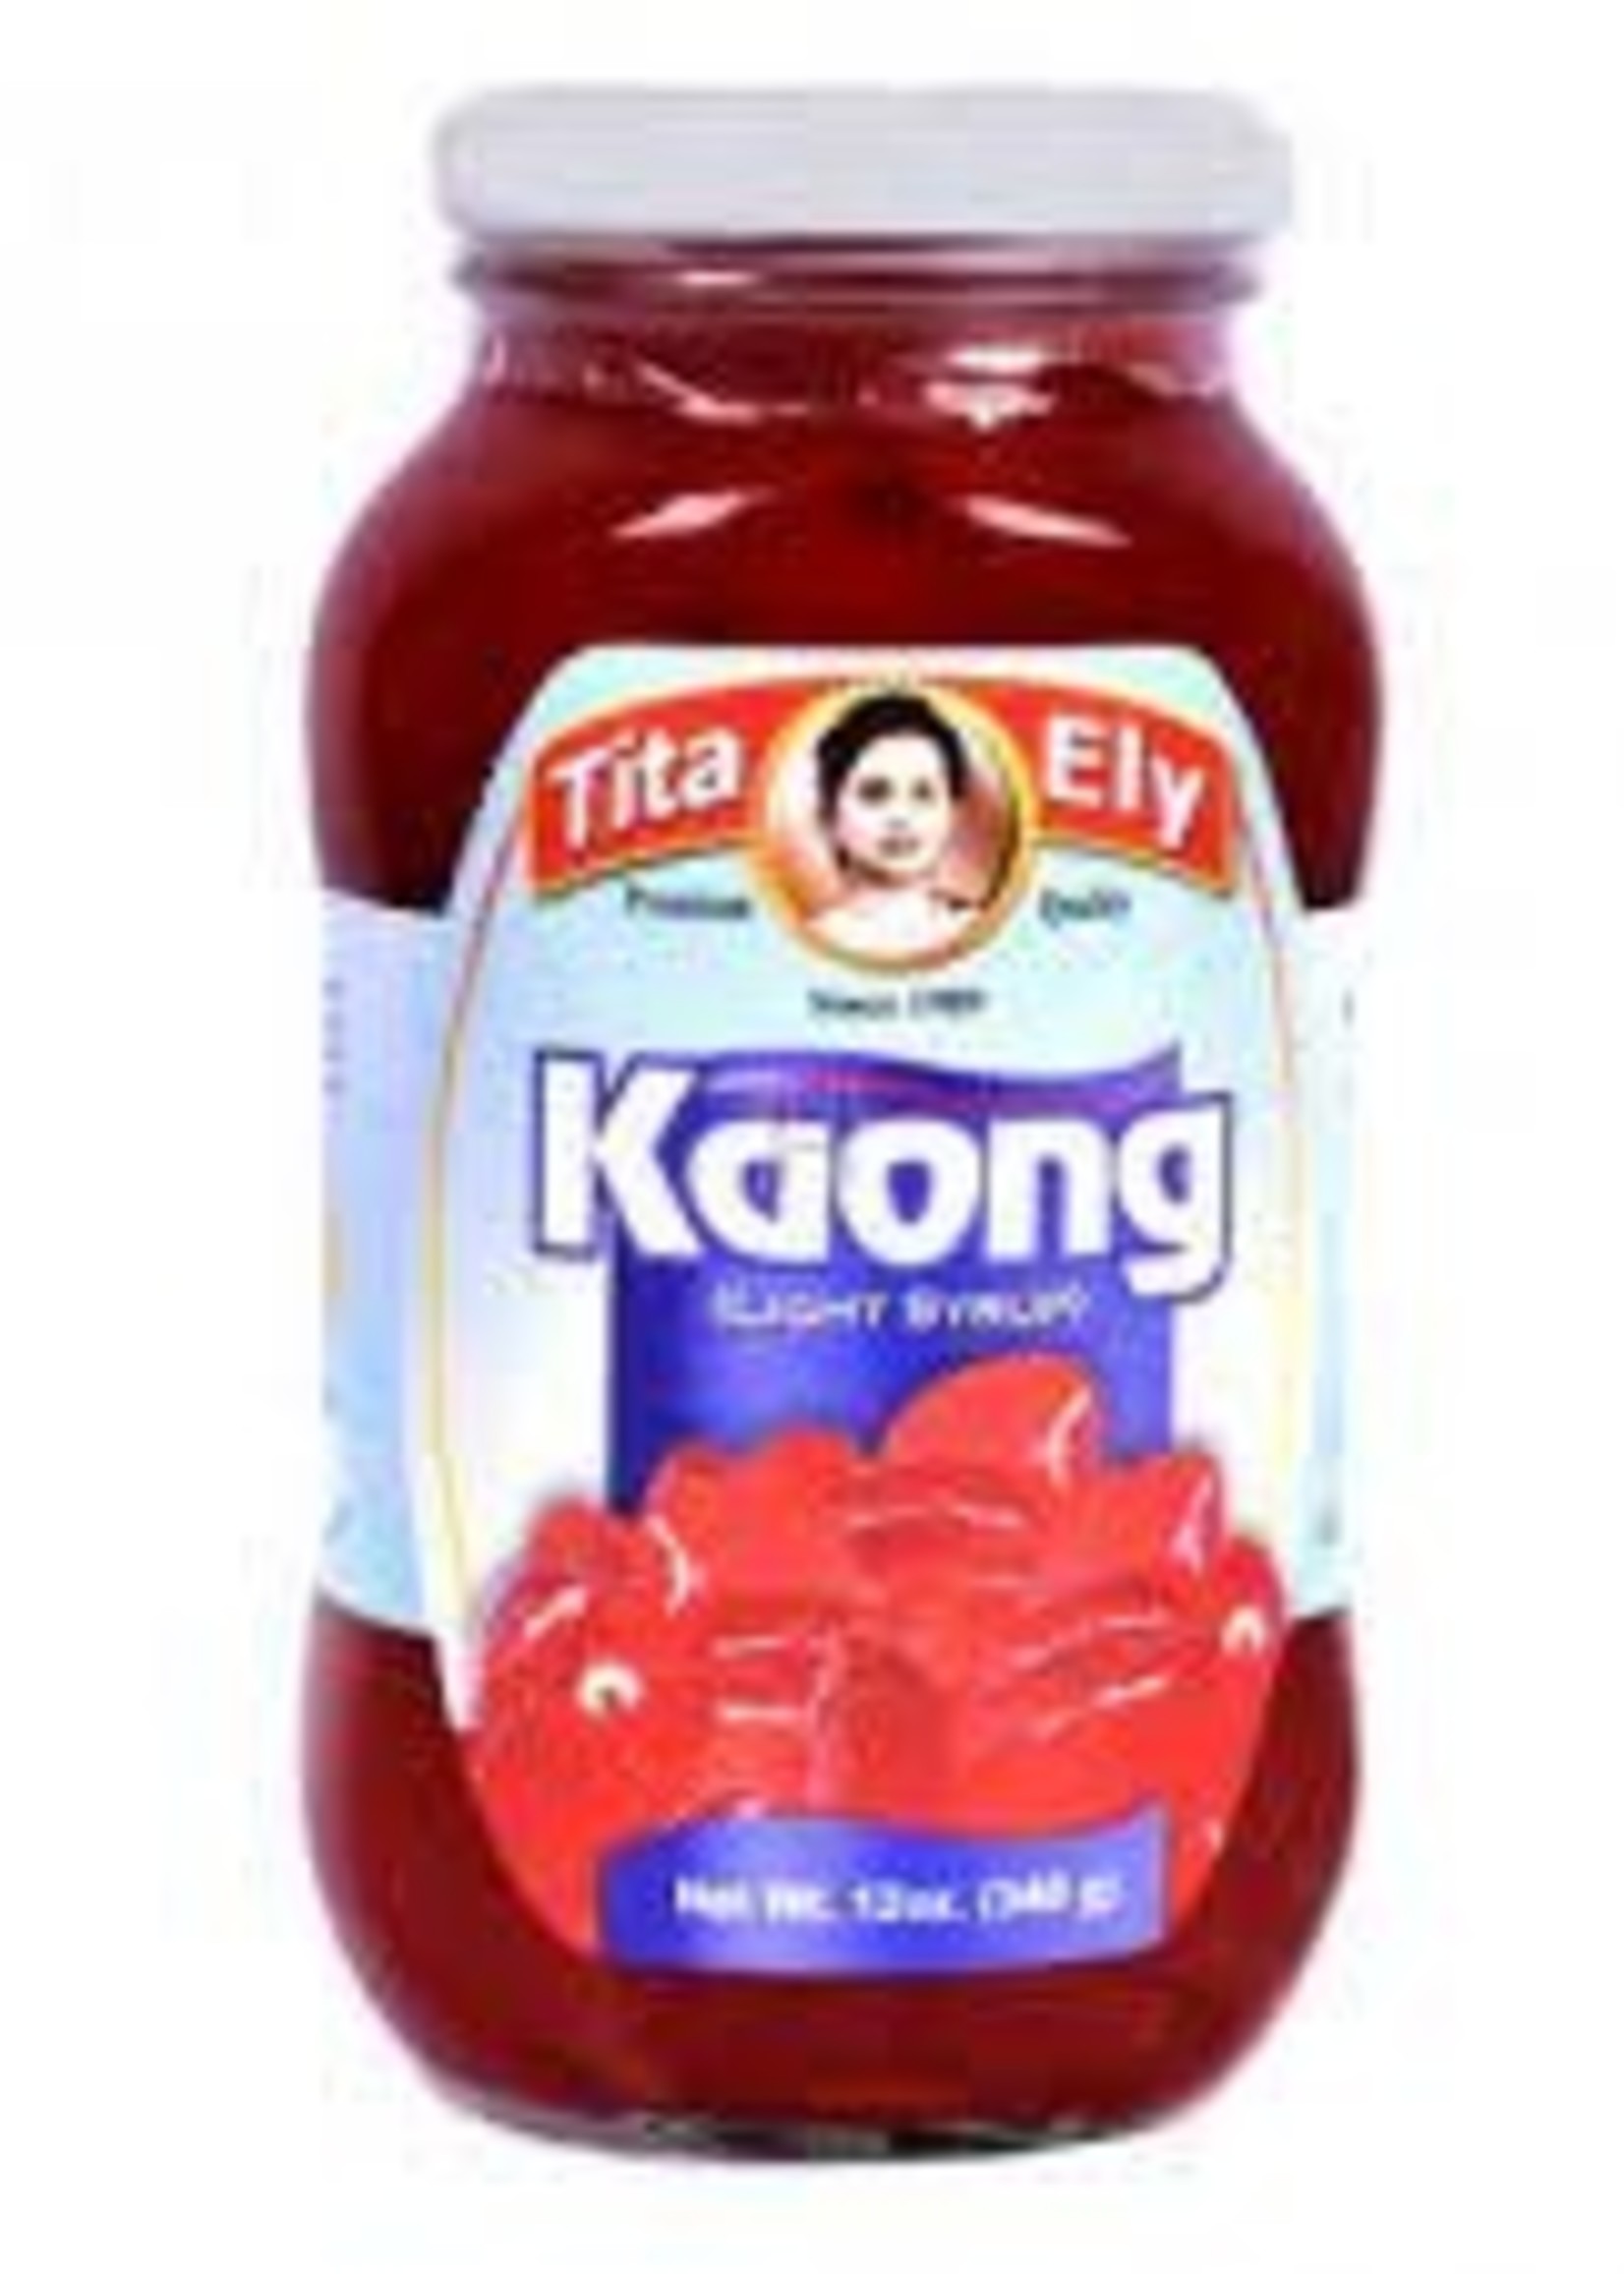 Kaong Red / Sugar Palm Fruit 340G Tita Ely